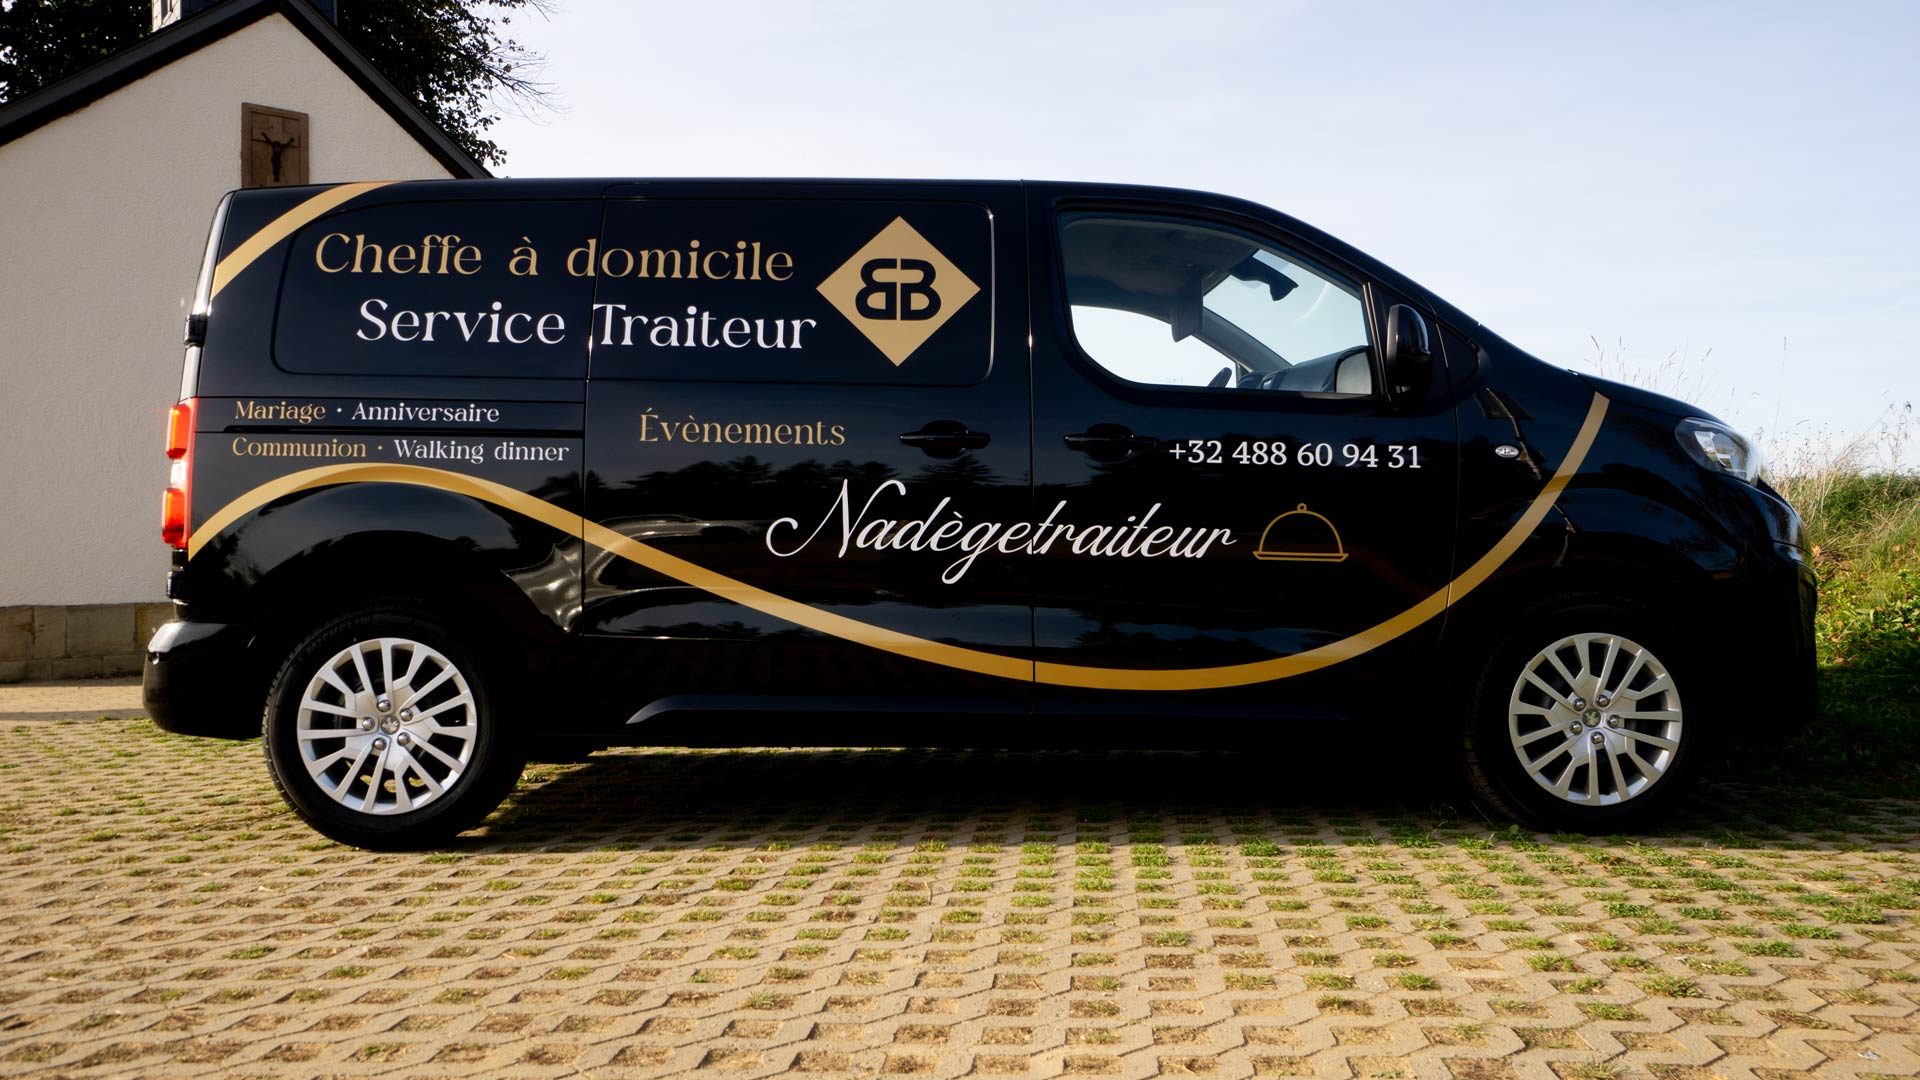 Notre équipe à réalisé le lettrage et la conception du design de la camionnette de Nadège Traiteur qui est situé à Rouvroy.